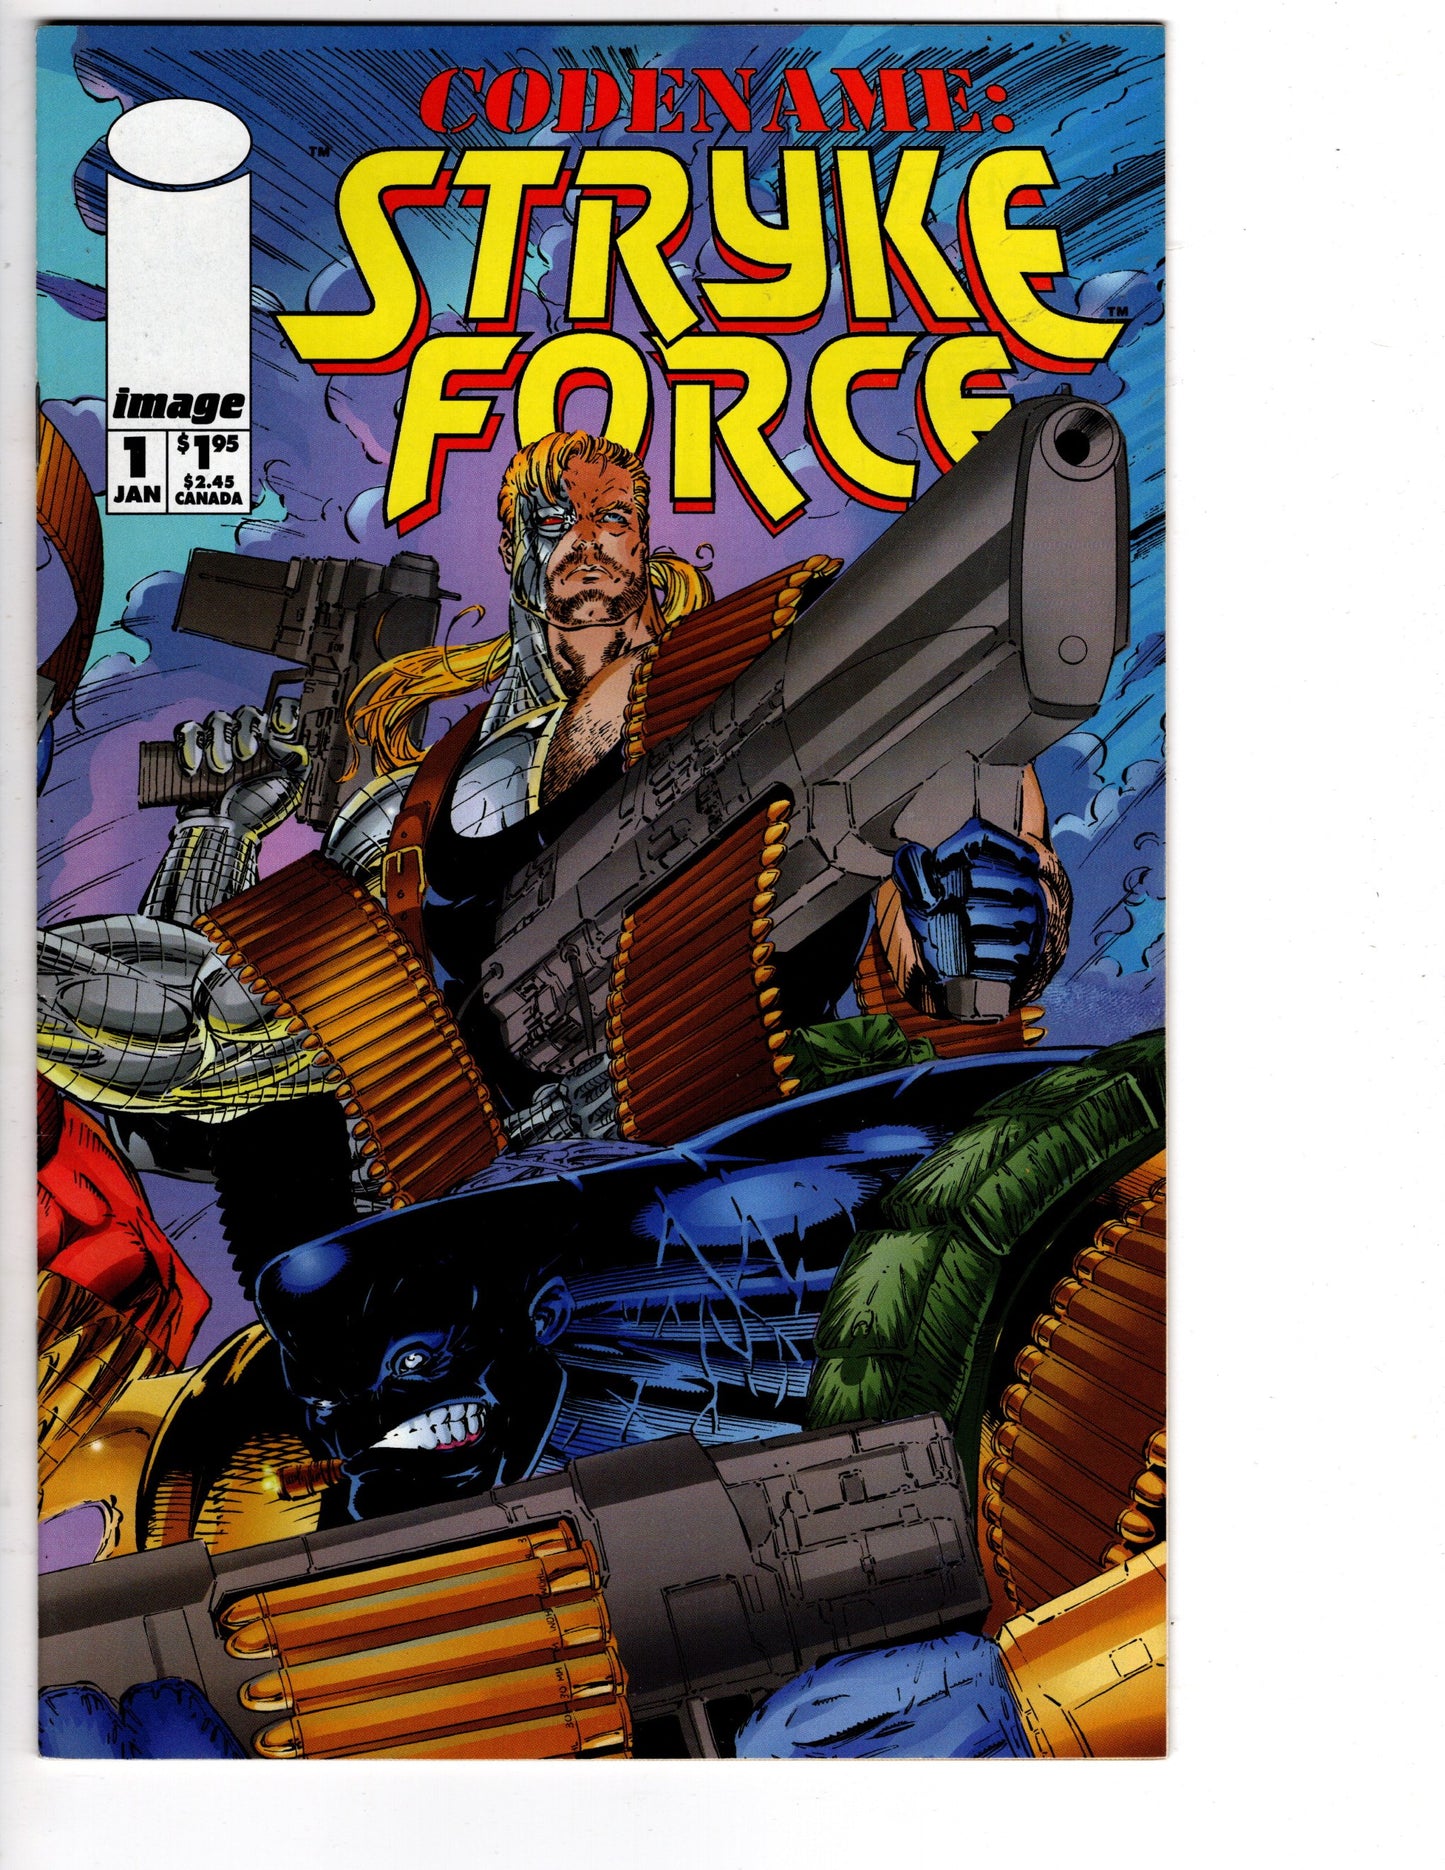 Stryke Force #1